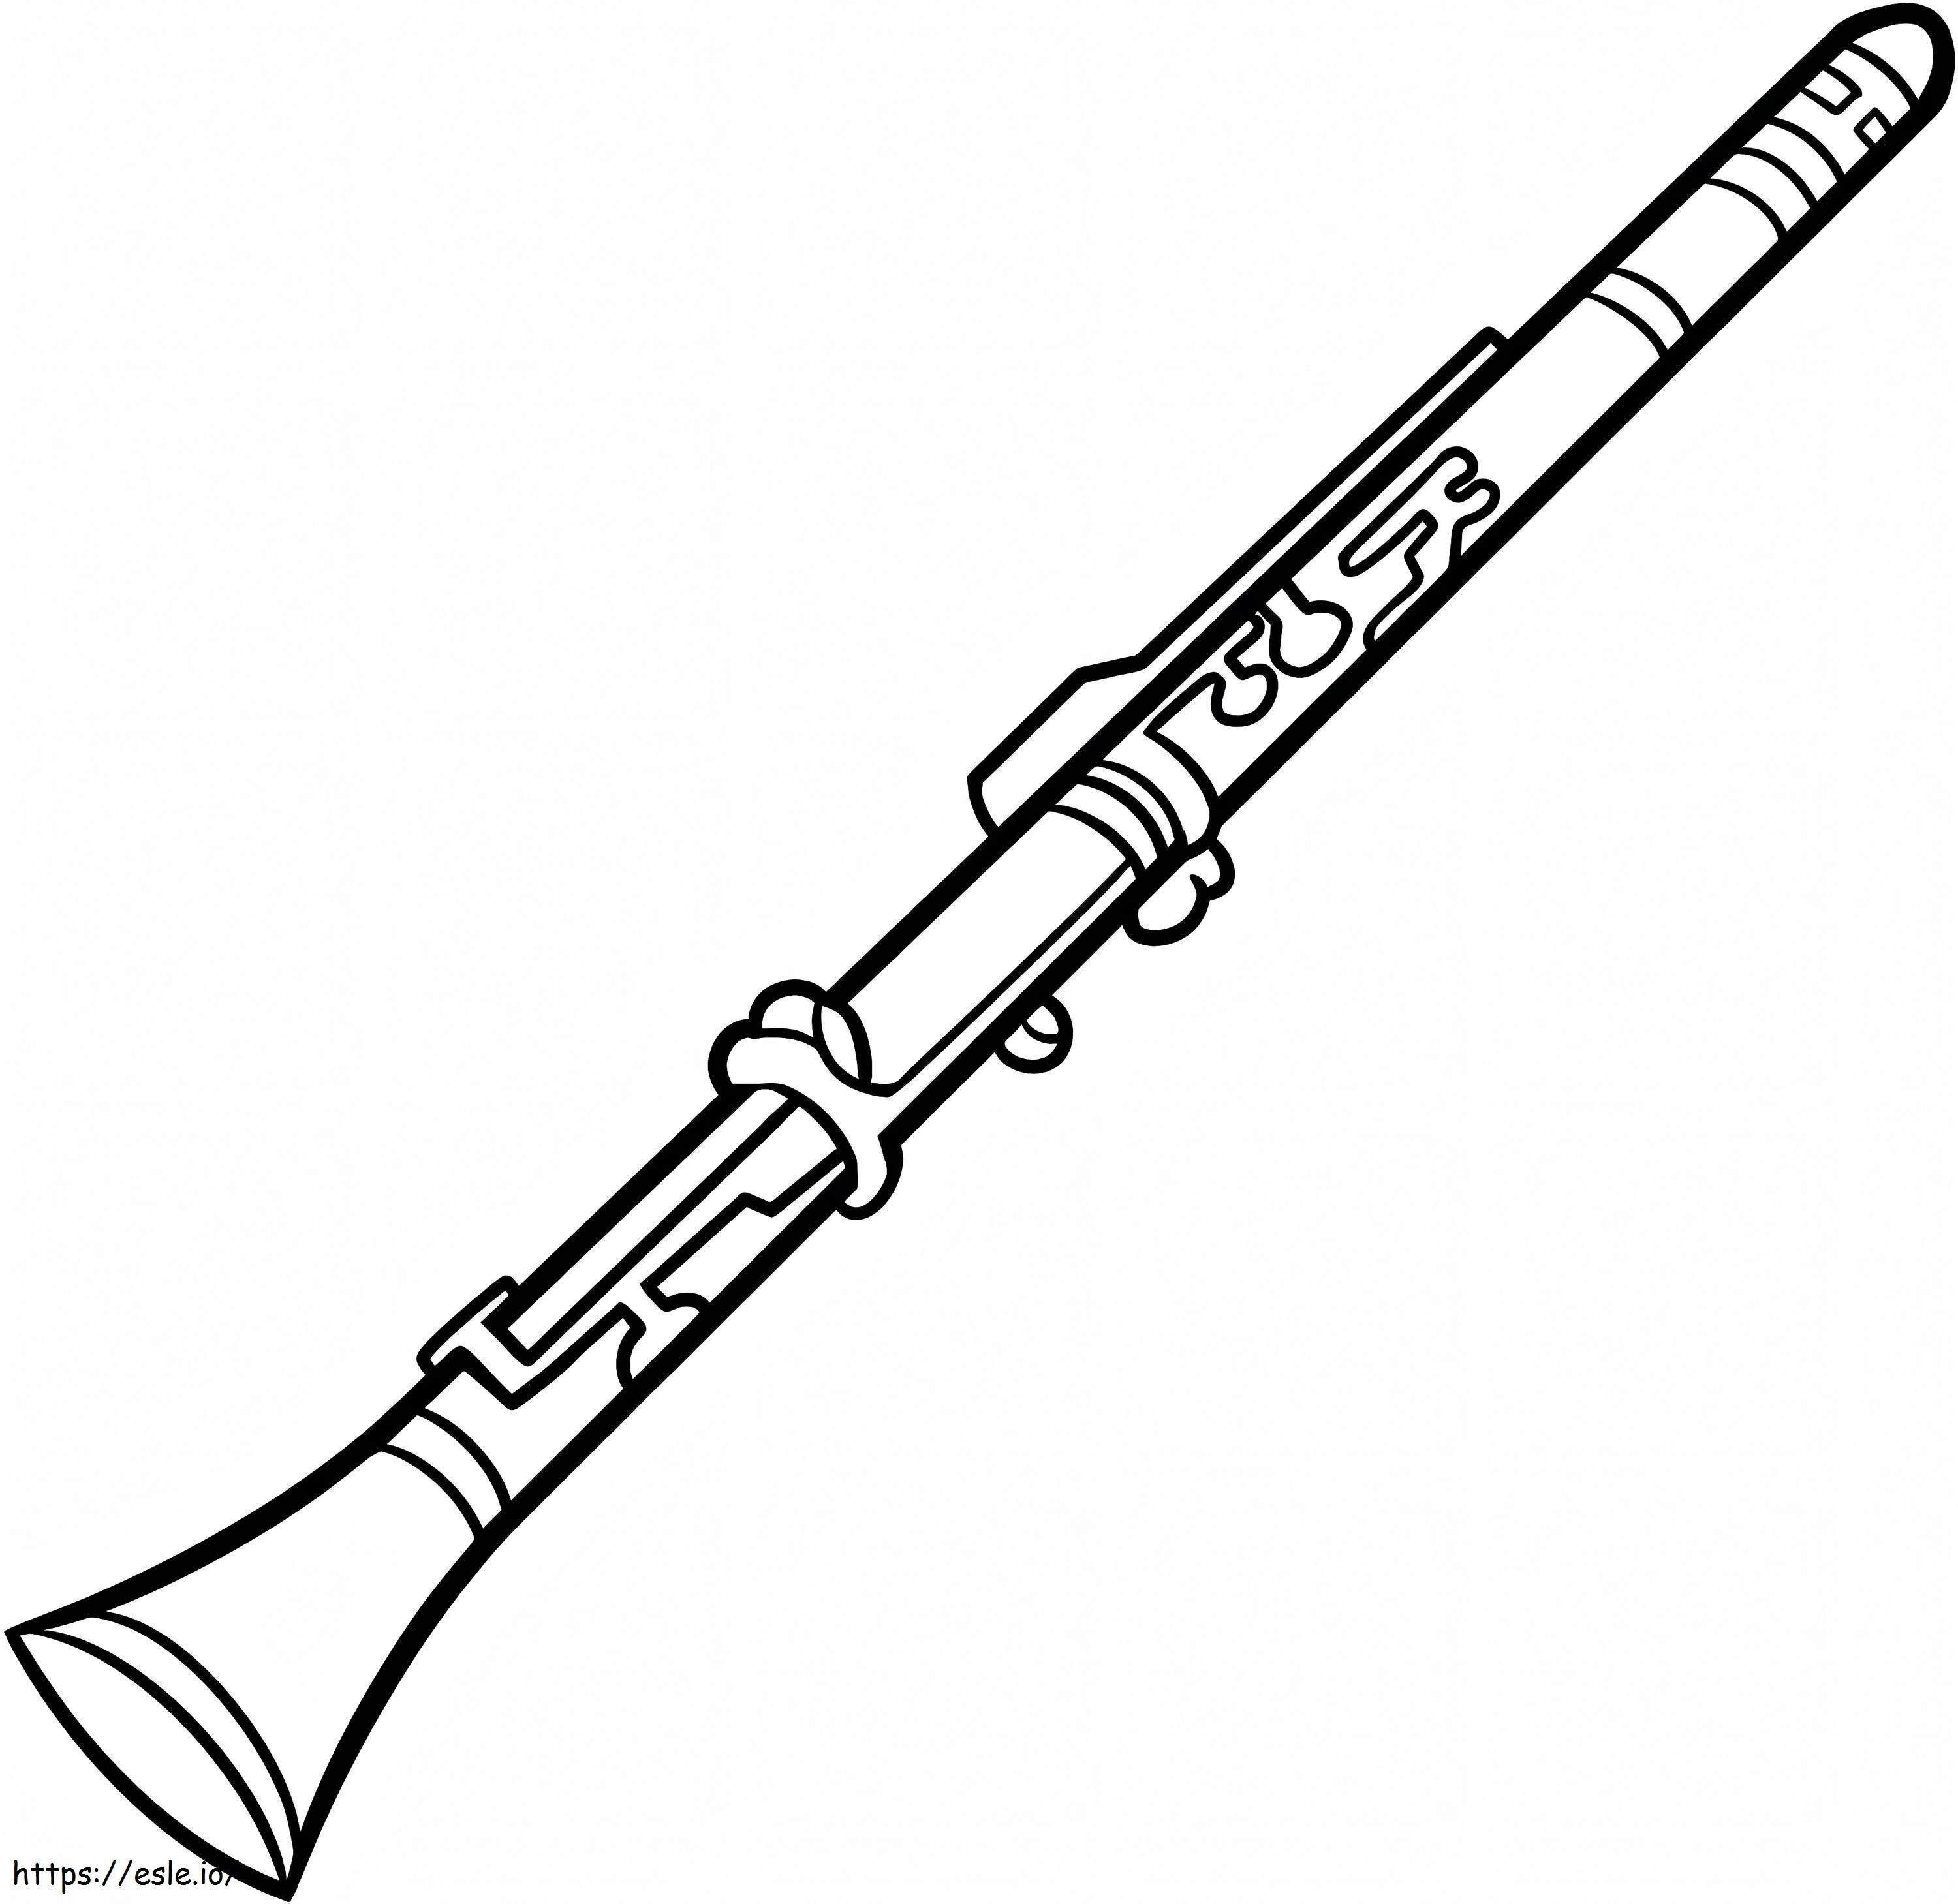 Coloriage Une clarinette à imprimer dessin